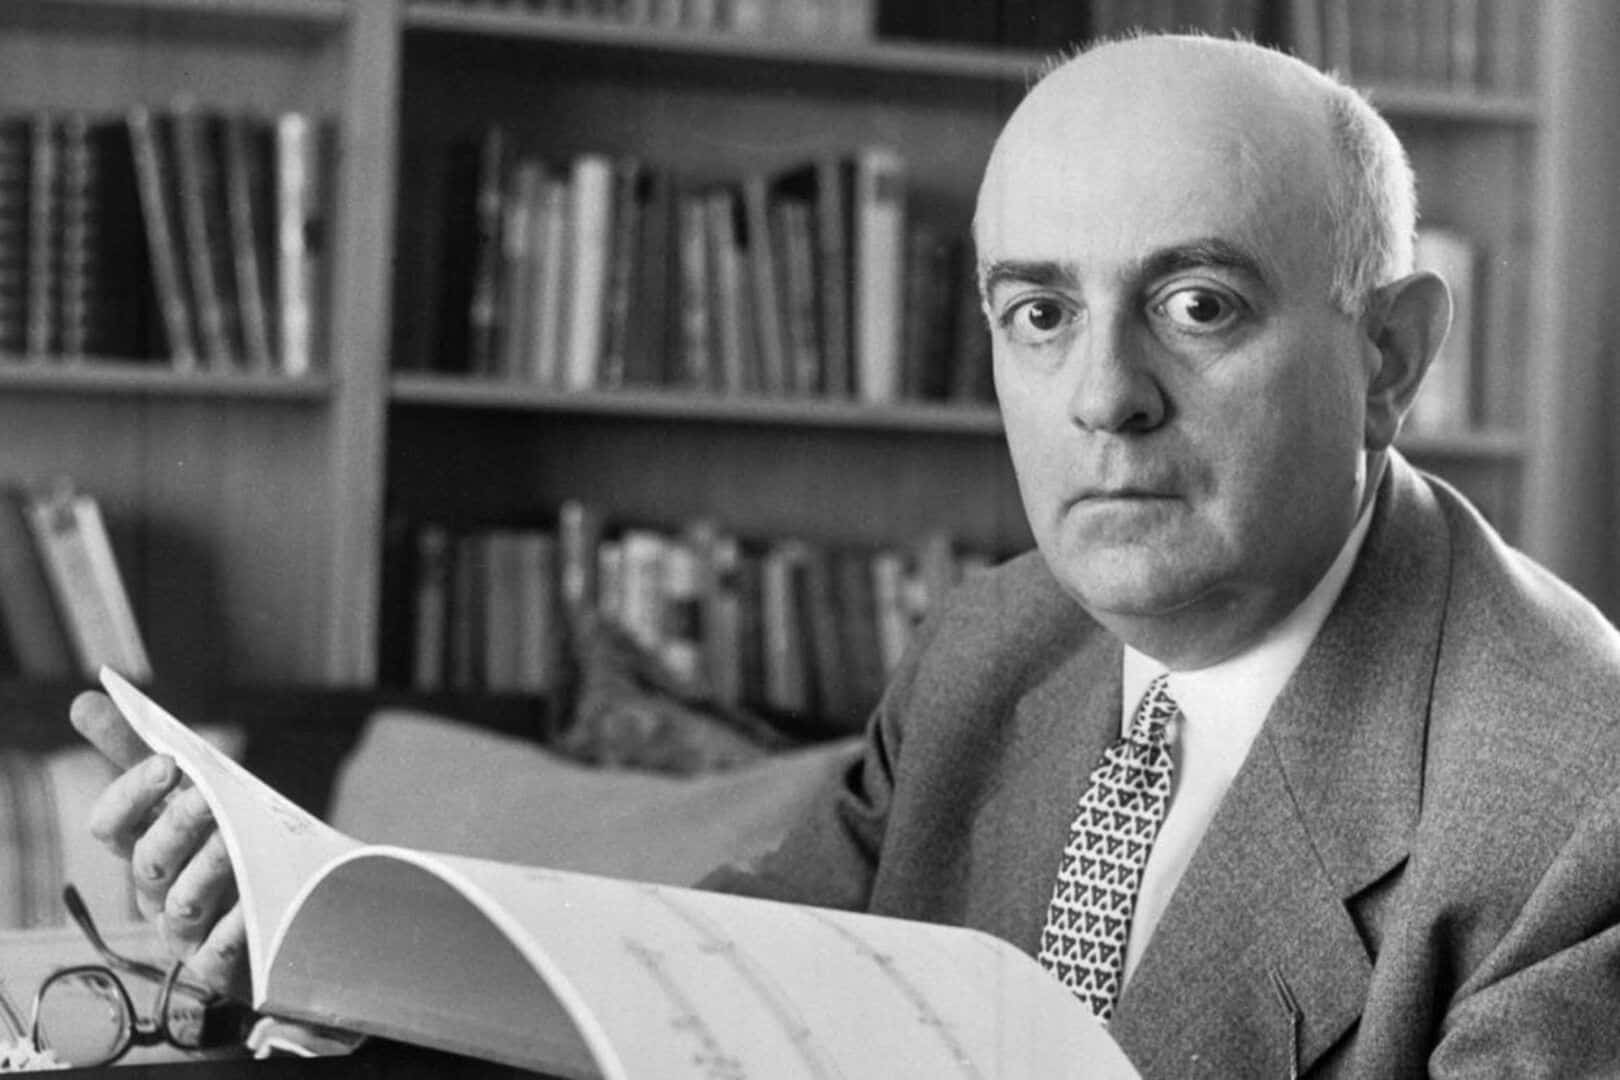 Theodor Adorno, quem foi? Biografia, conceitos principais e obras